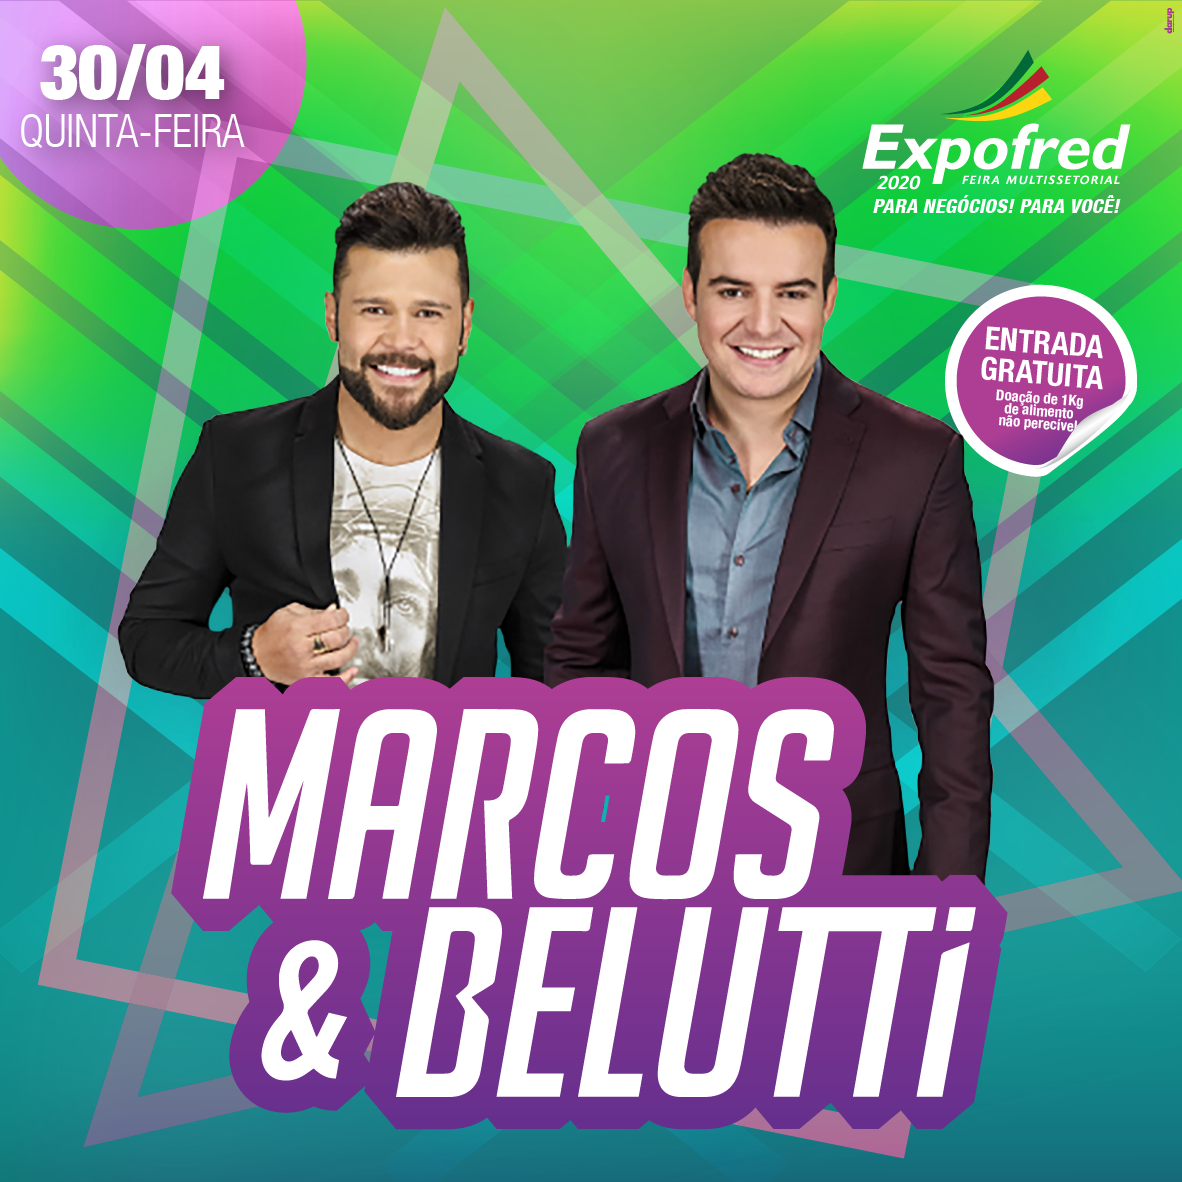 Marcos & Belutti animarão os visitantes do segundo dia da Expofred